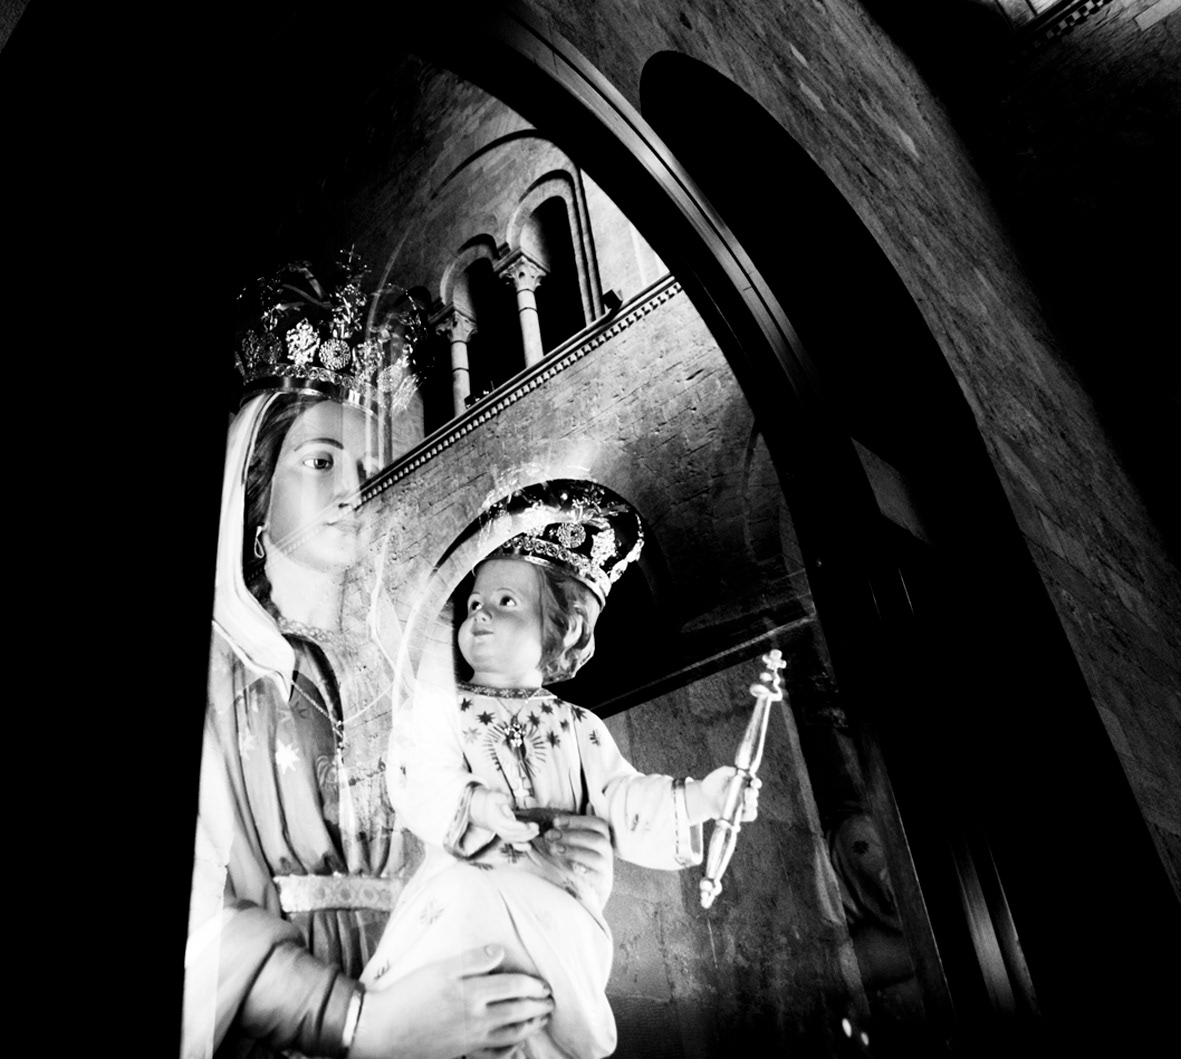 church sacred art statue religion black White Italy puglia bari monopoli culture devotion